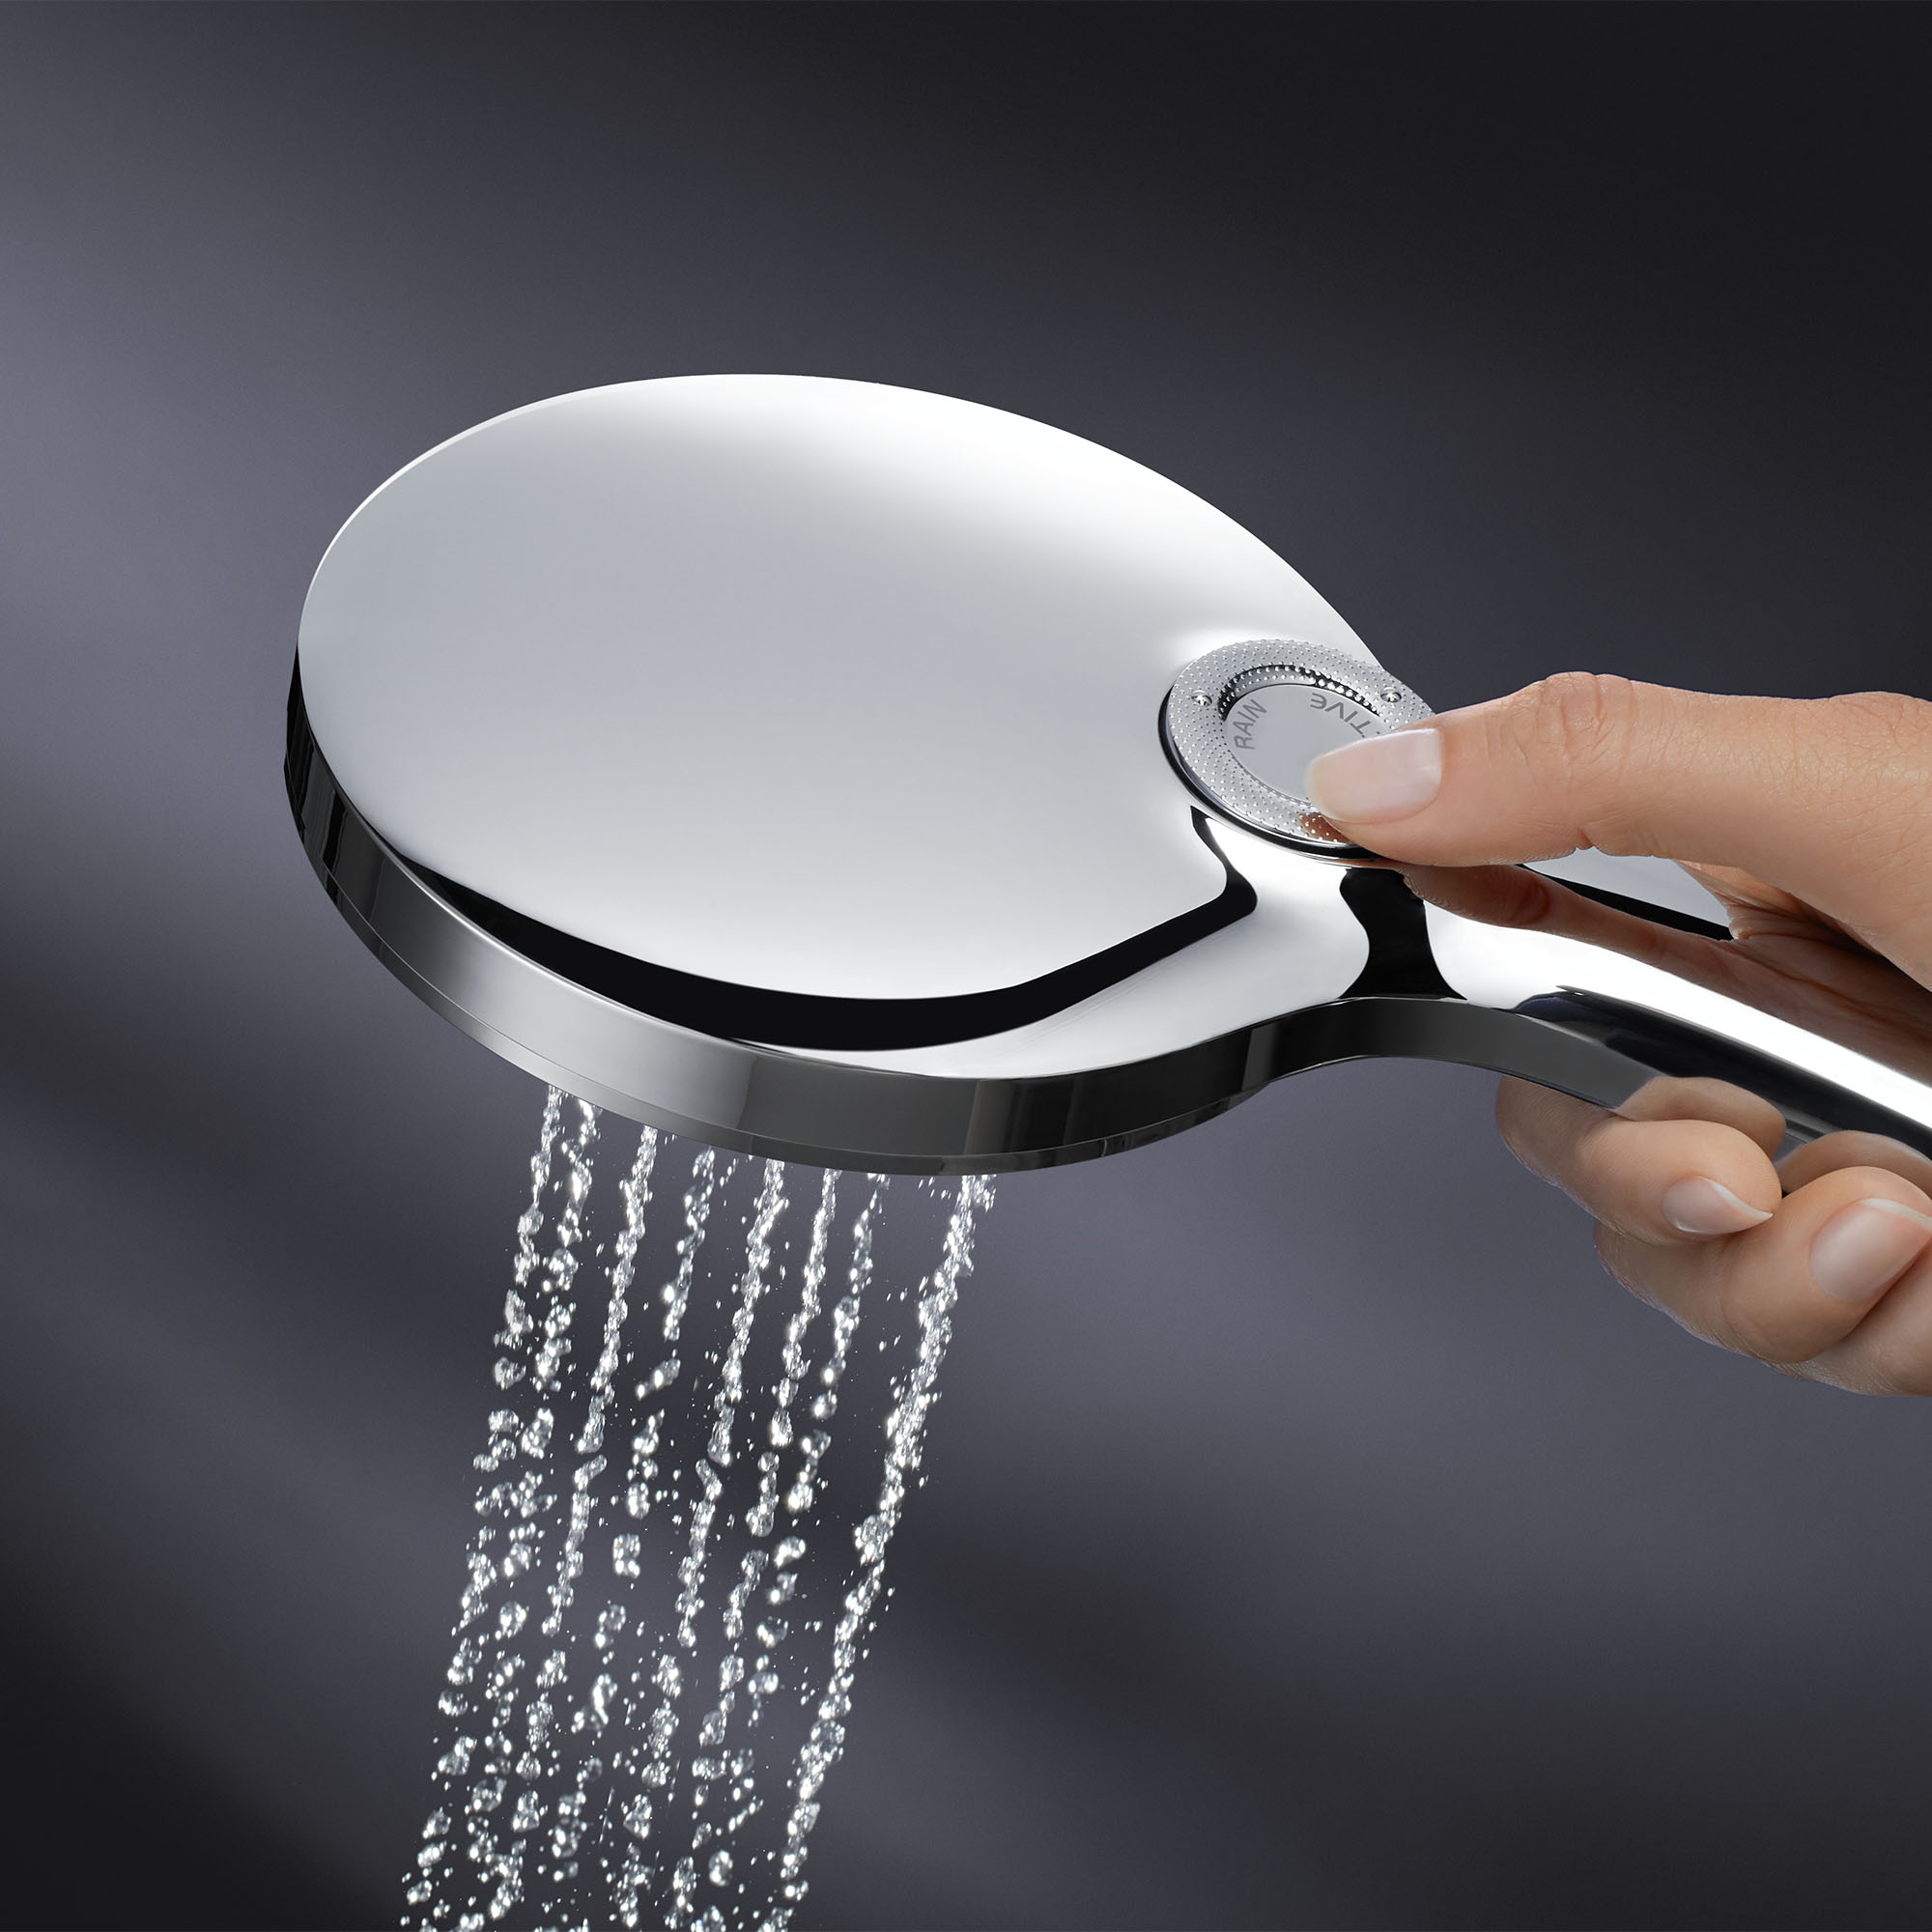 Hand Shower - 3 Sprays, 1.75 GPM (6.6 L/min)